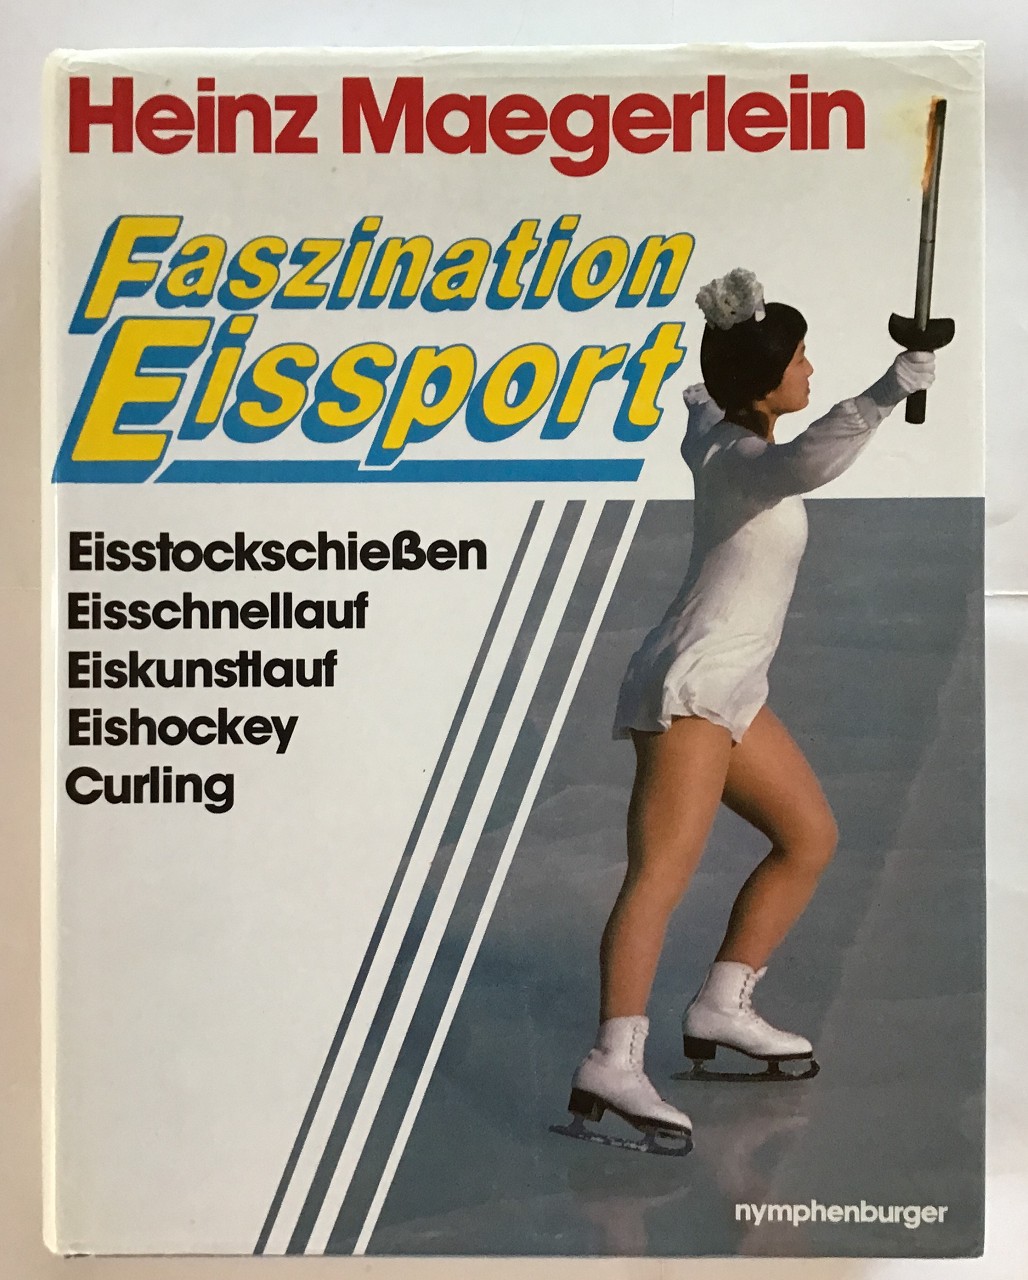 Faszination Eissport : 100 Jahre Eissport. Eishockey, Eiskunstlauf, Eisschnelllauf, Eisstockschießen, Curling - Maegerlein, Heinz